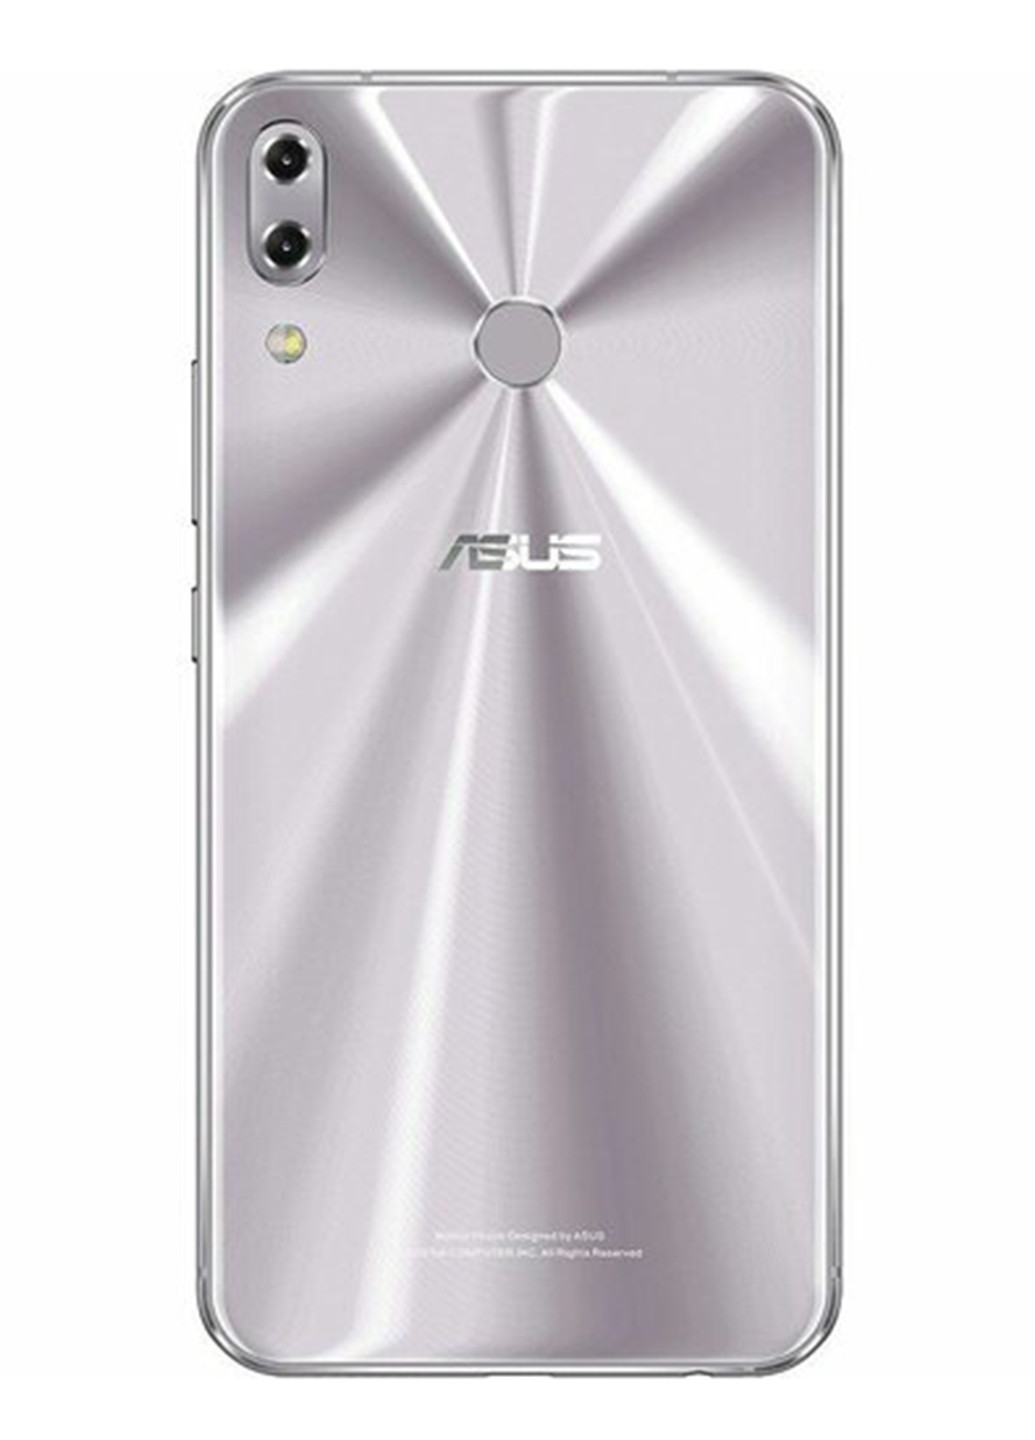 Смартфон ZenFone 5 4 / 64GB Meteor Silver (ZE620KL-1H013WW) Asus zenfone 5 4/64gb meteor silver (ze620kl-1h013ww) (132797856)